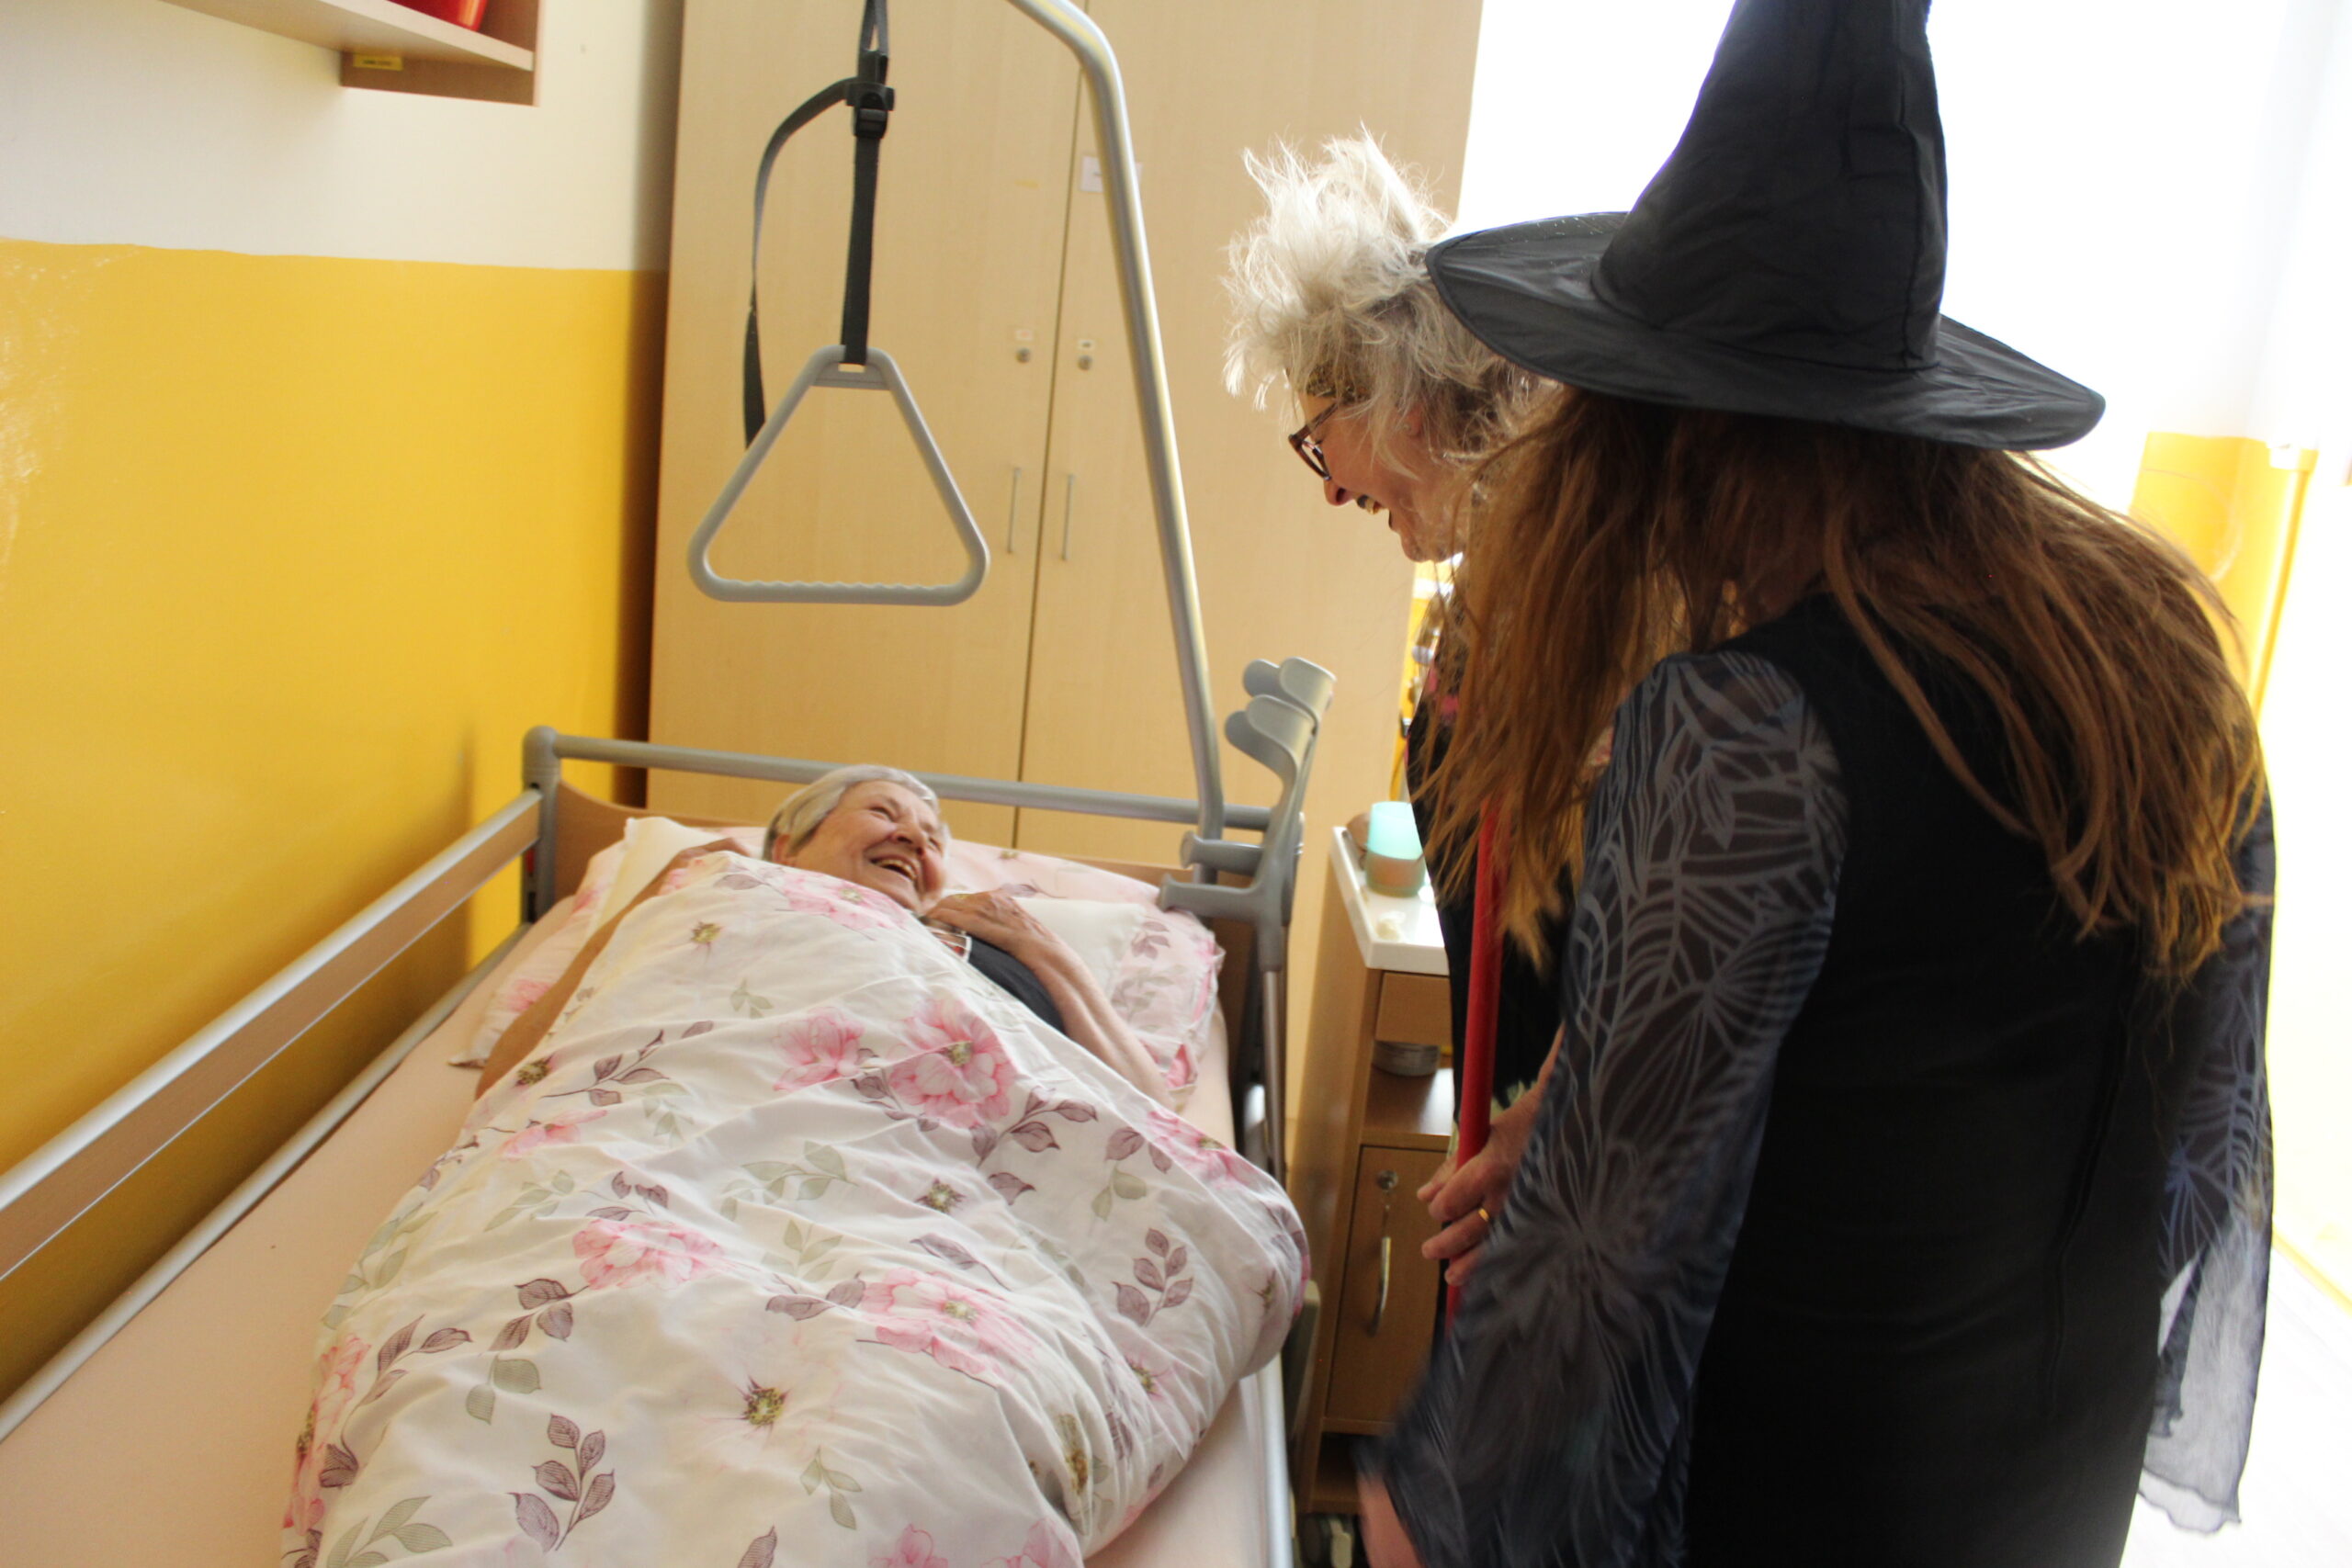 Čarodějnice stojí u postele na pokoji domova.